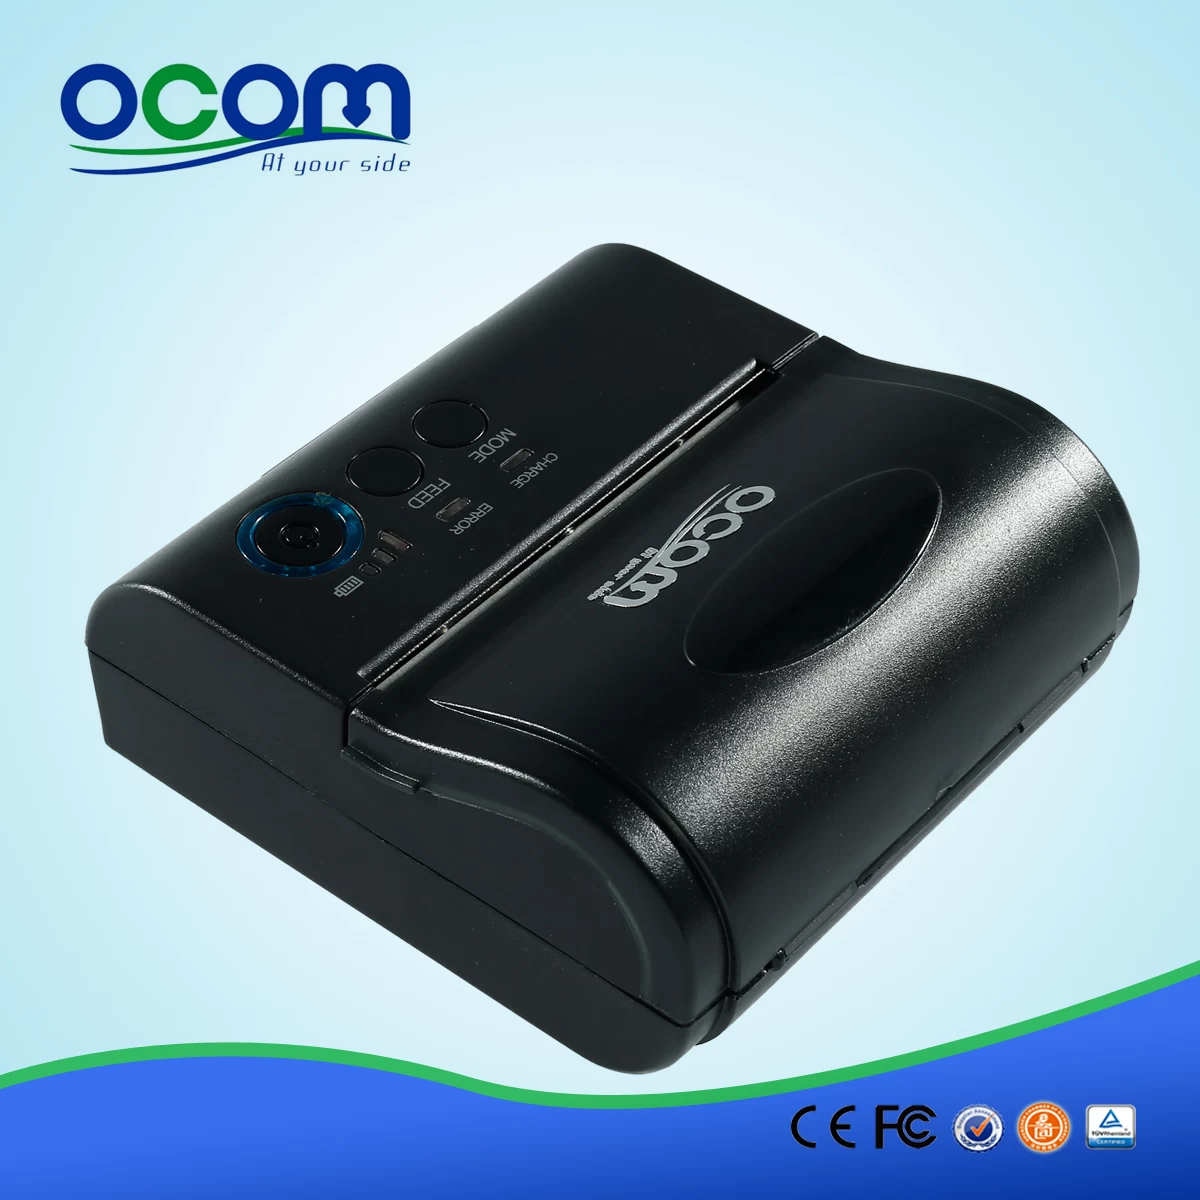 Quente! OCPP-M082 mais barato mini-impressora Bluetooth portátil com adaptador